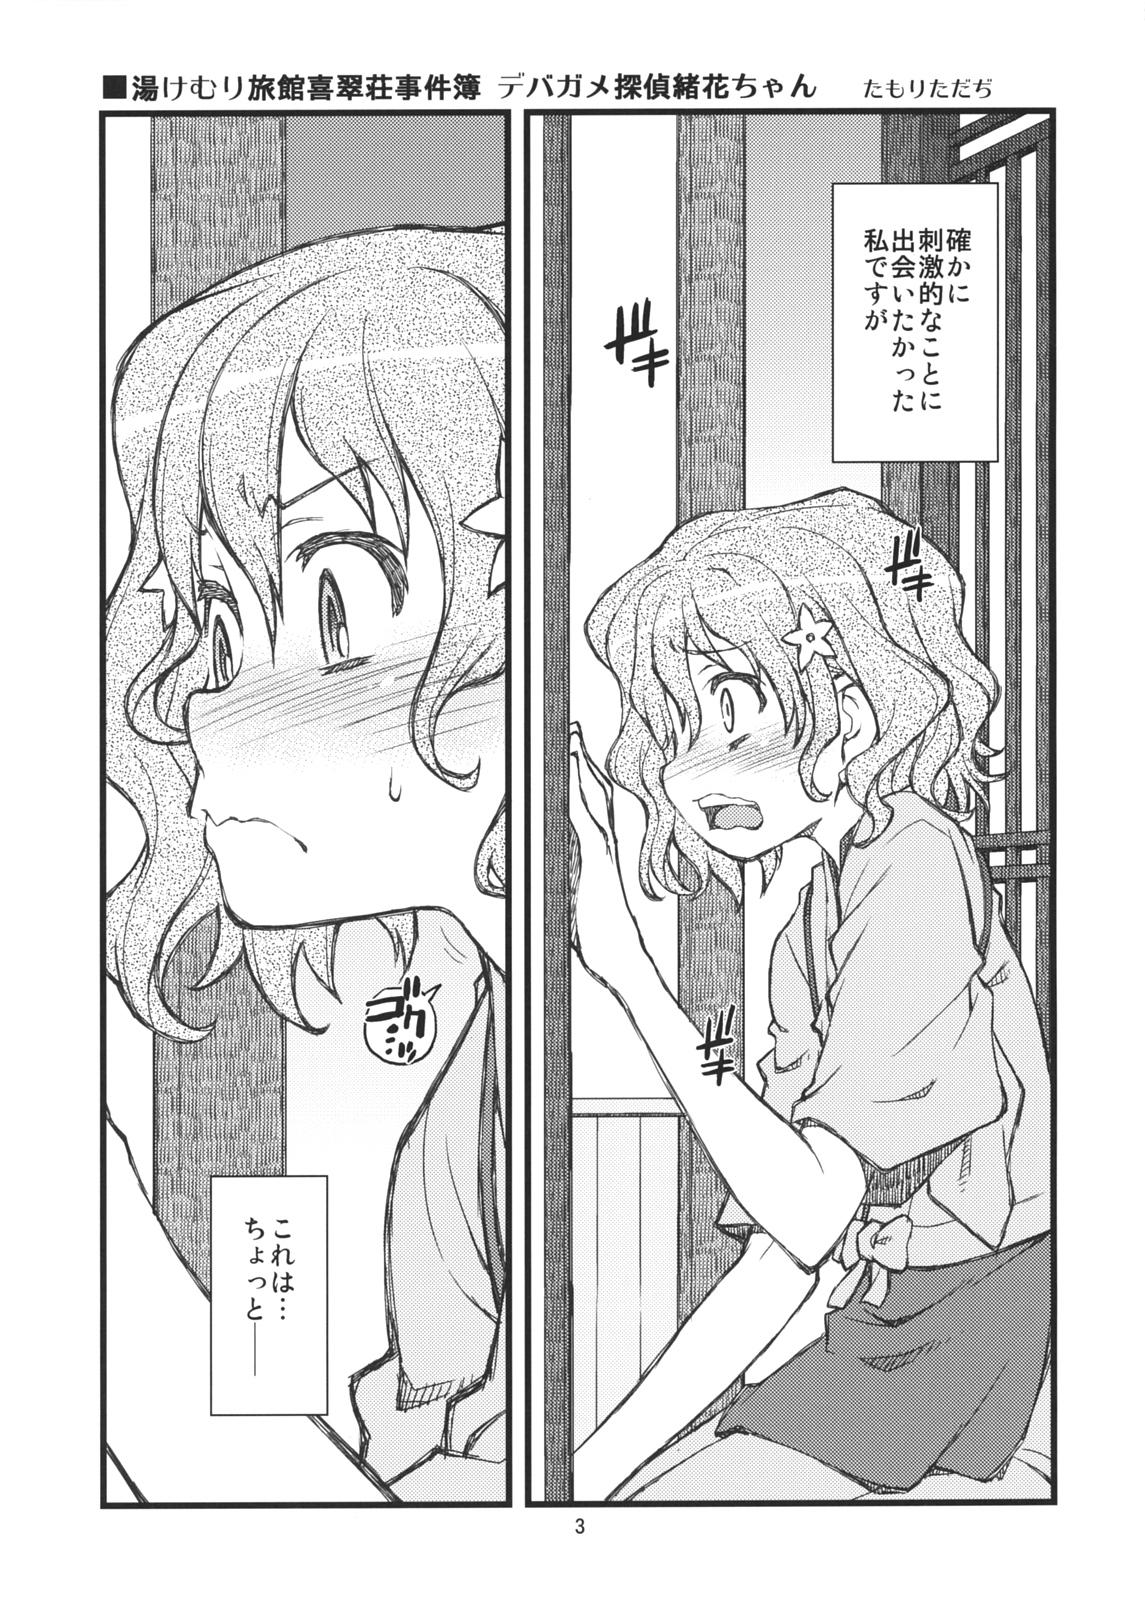 Groping Hanasake! GIRLS - Hanasaku iroha Bikini - Page 2